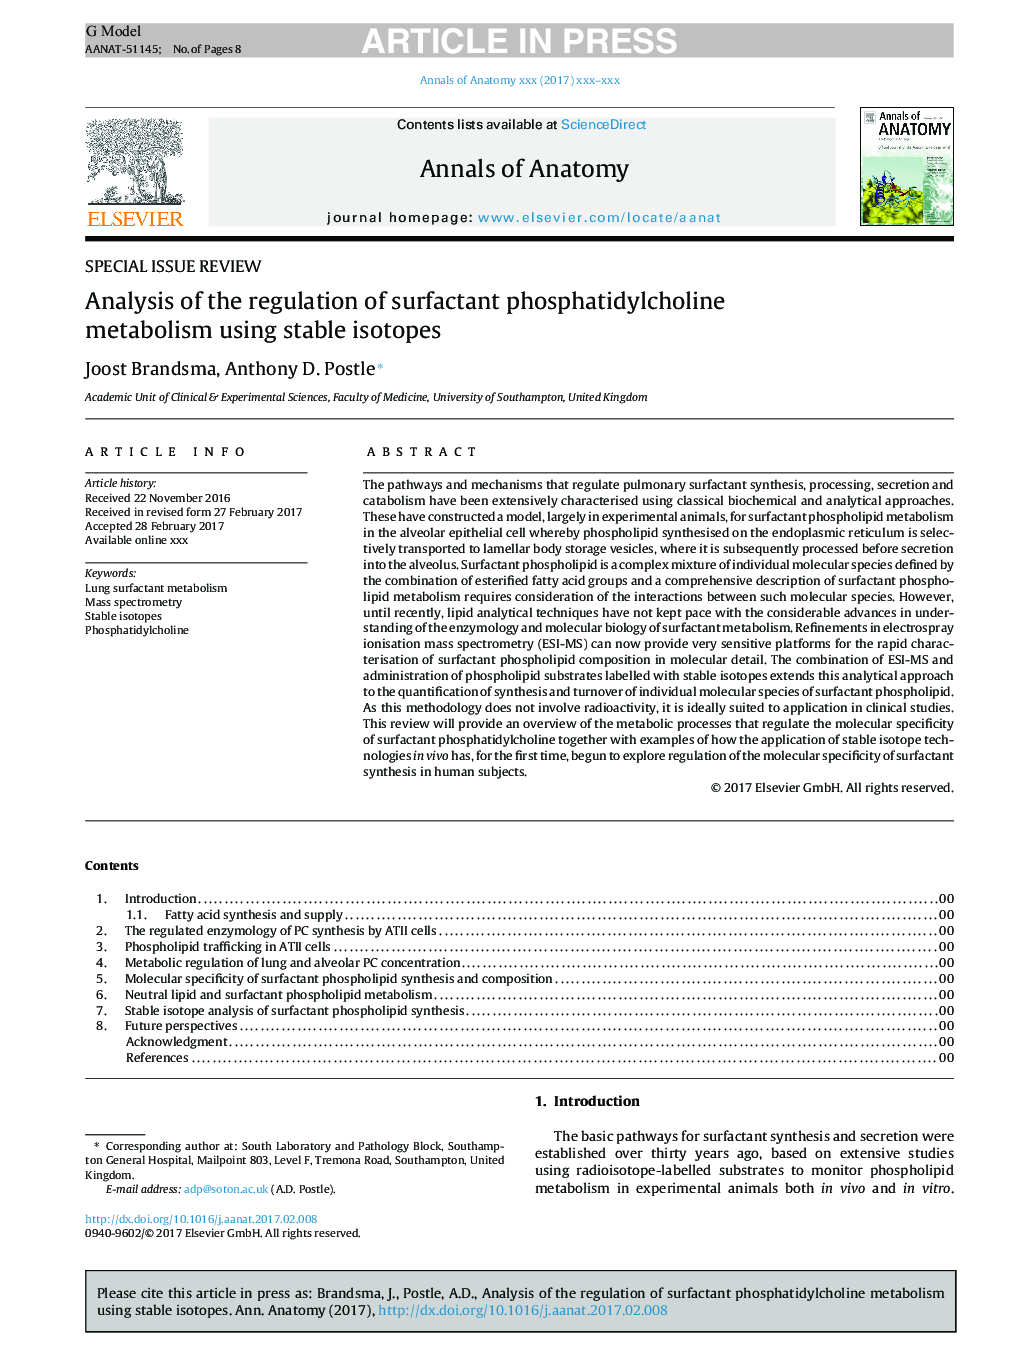 تجزیه و تحلیل تنظیم متابولیسم فسفاتیدیل کولین سورفکتانت با استفاده از ایزوتوپ های پایدار 